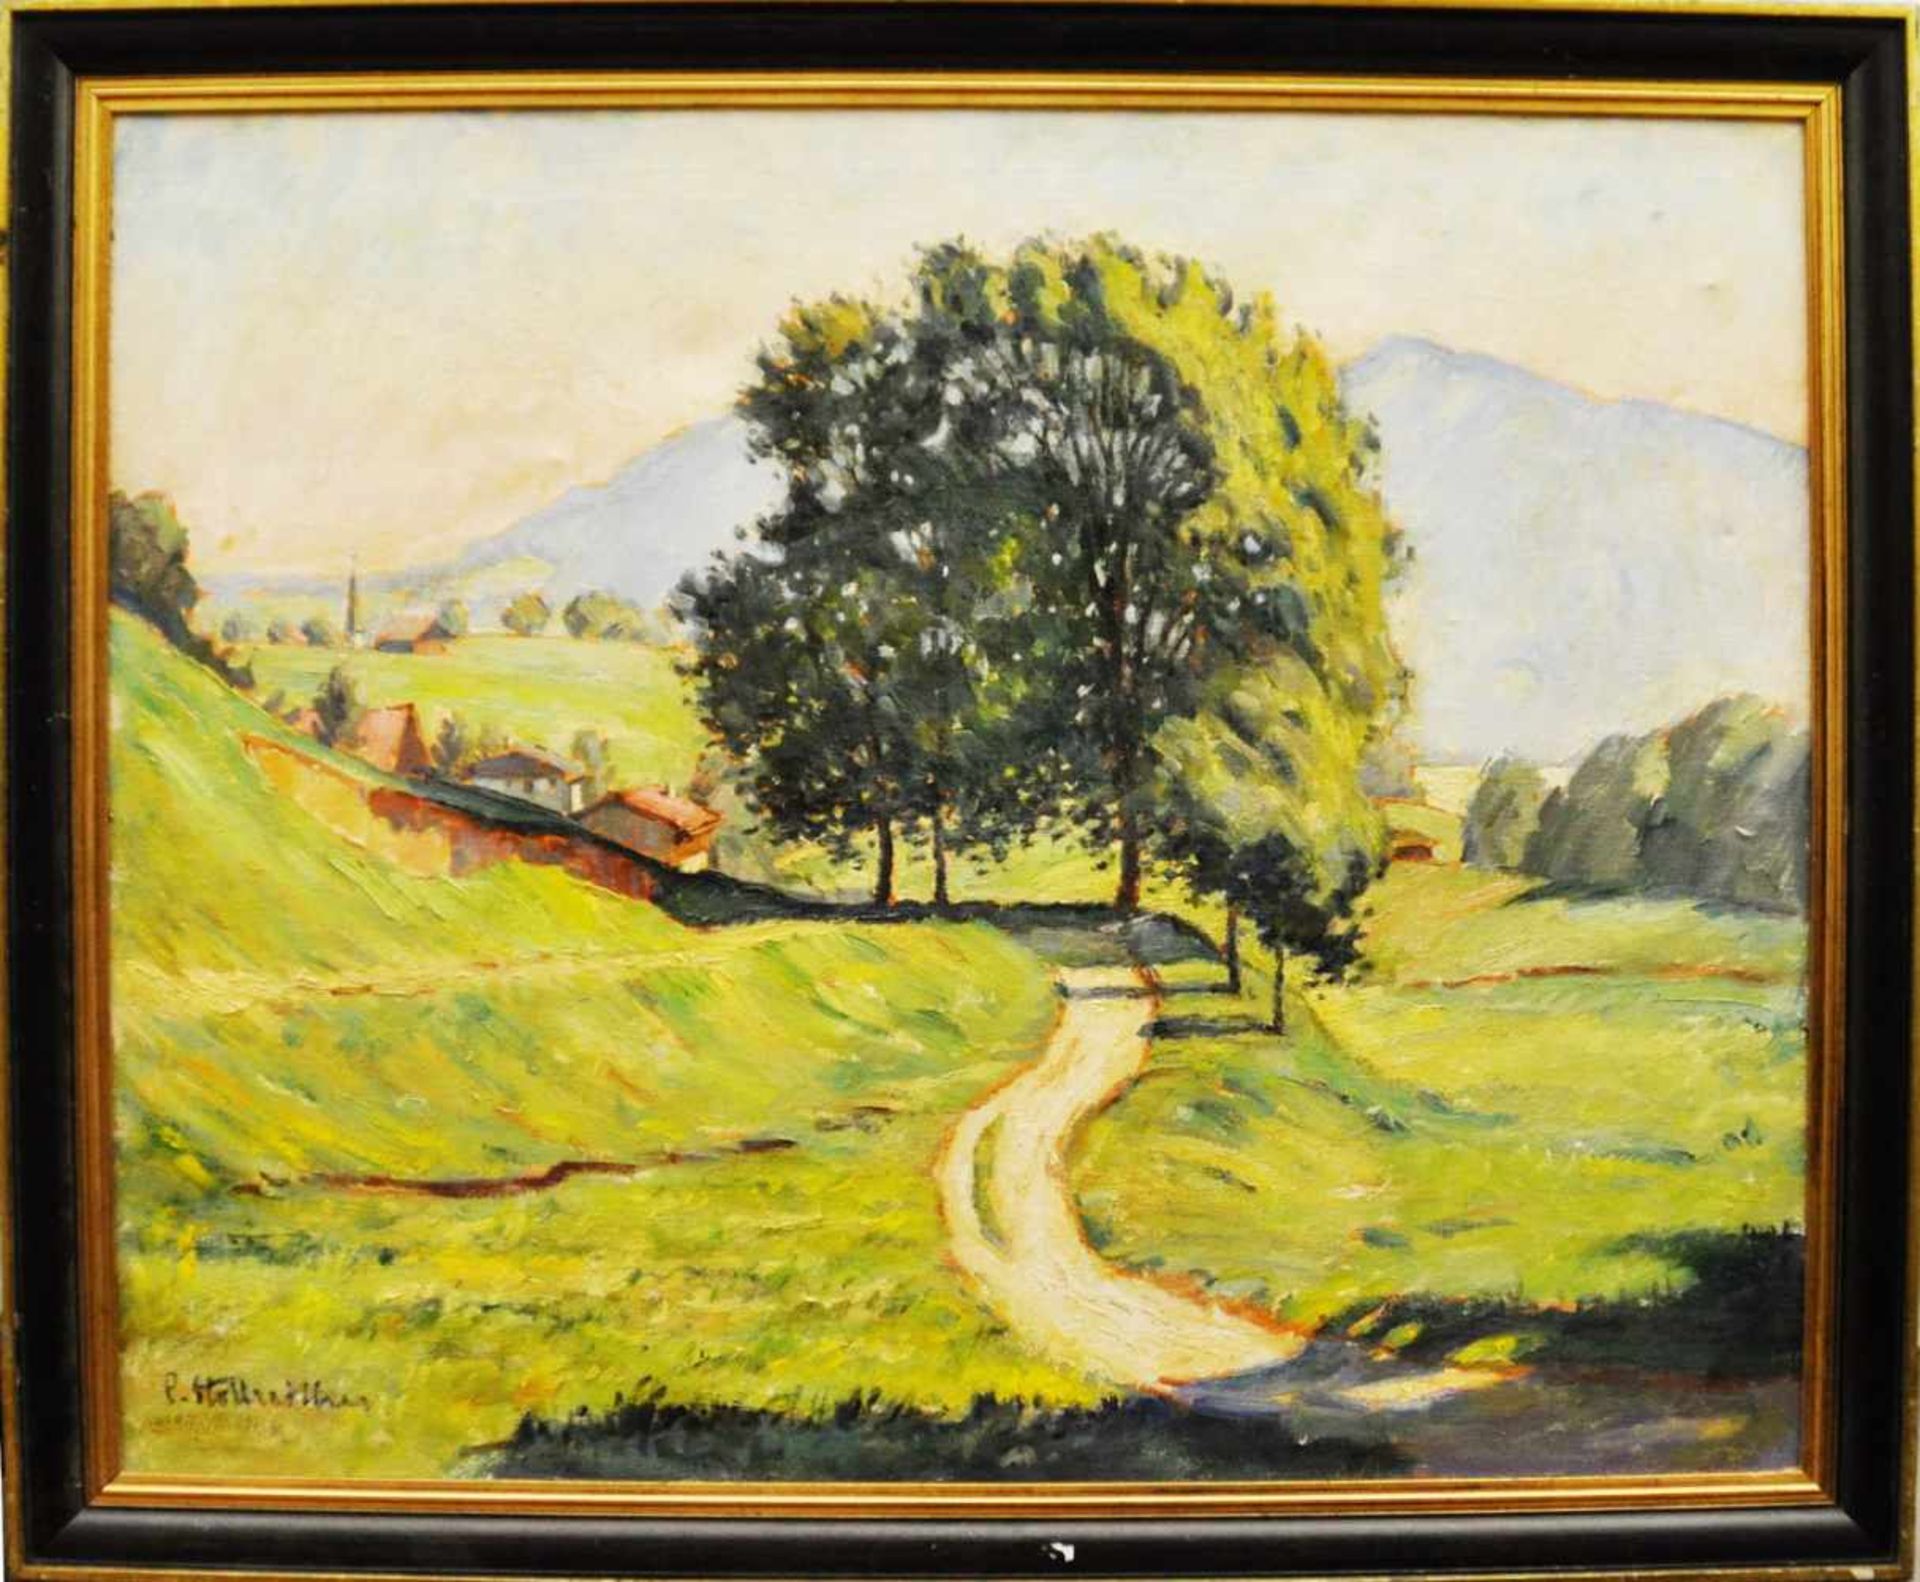 Stollreiter, Paul (1886 - 1973)"Landschaft in Bayern", Öl auf Lw, 80 x 100 cm, links unten signiert